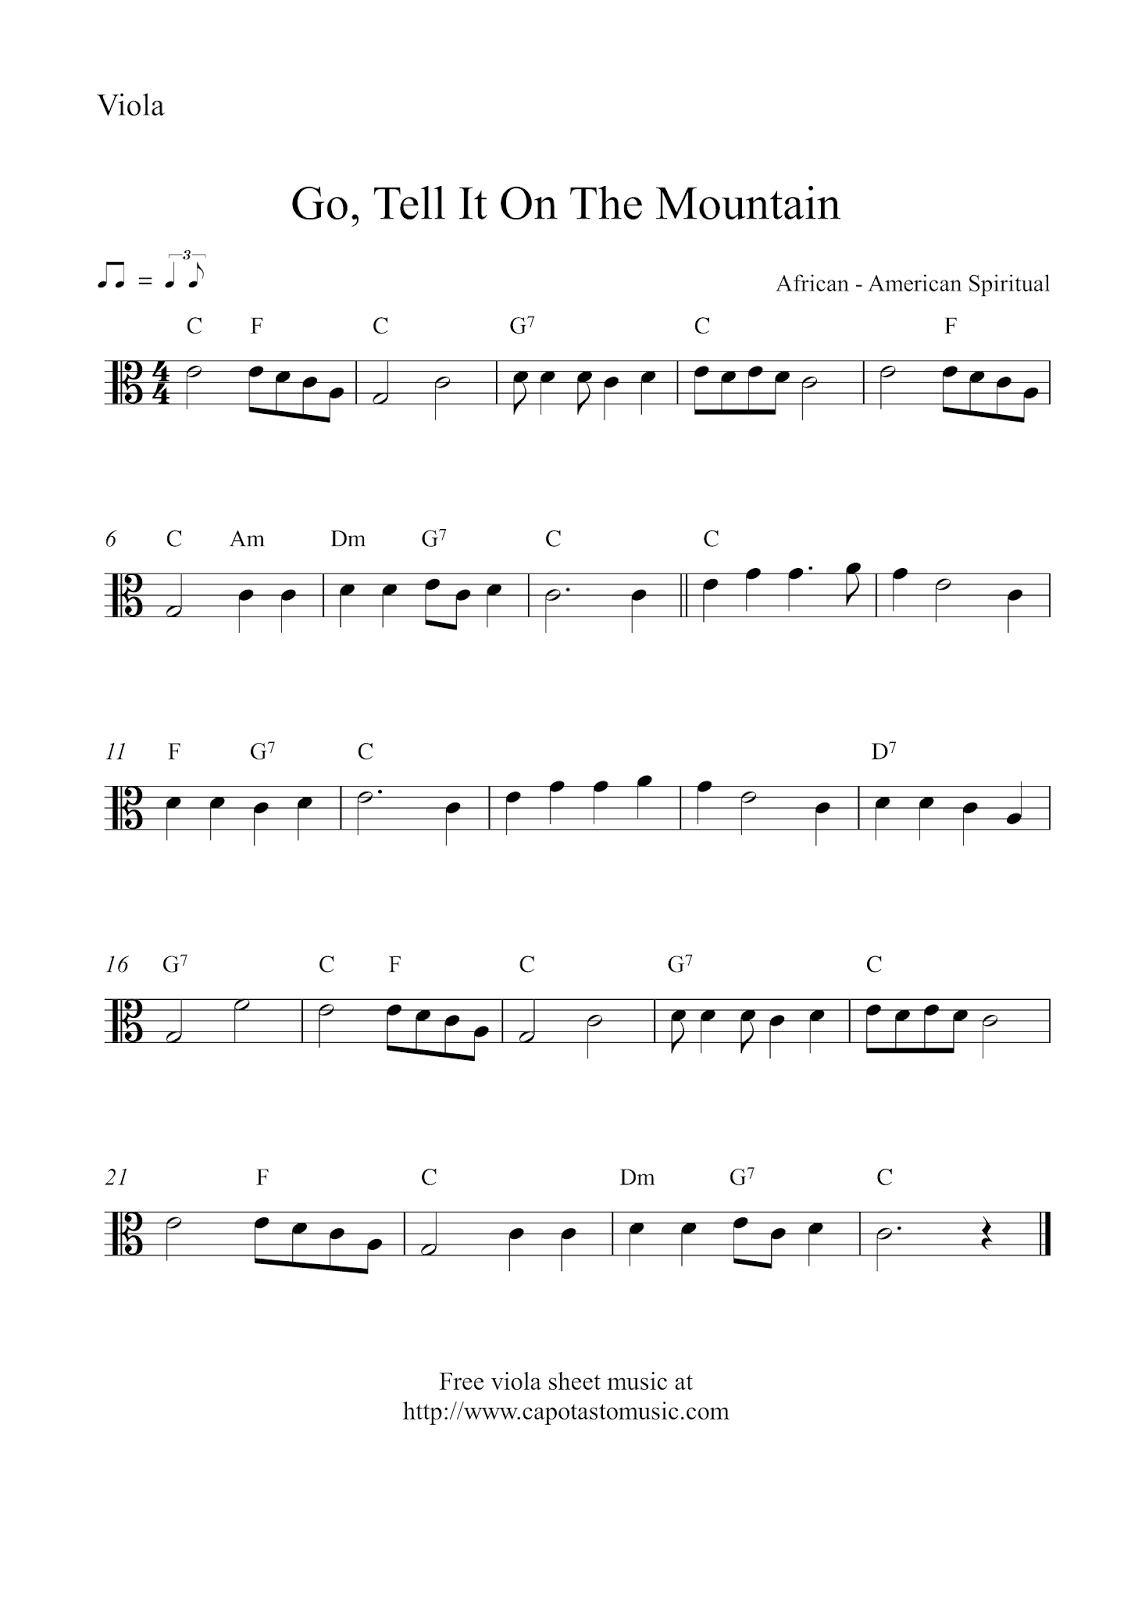 Free Christmas Viola Sheet Music - Go, Tell It On The Mountain - Viola Sheet Music Free Printable